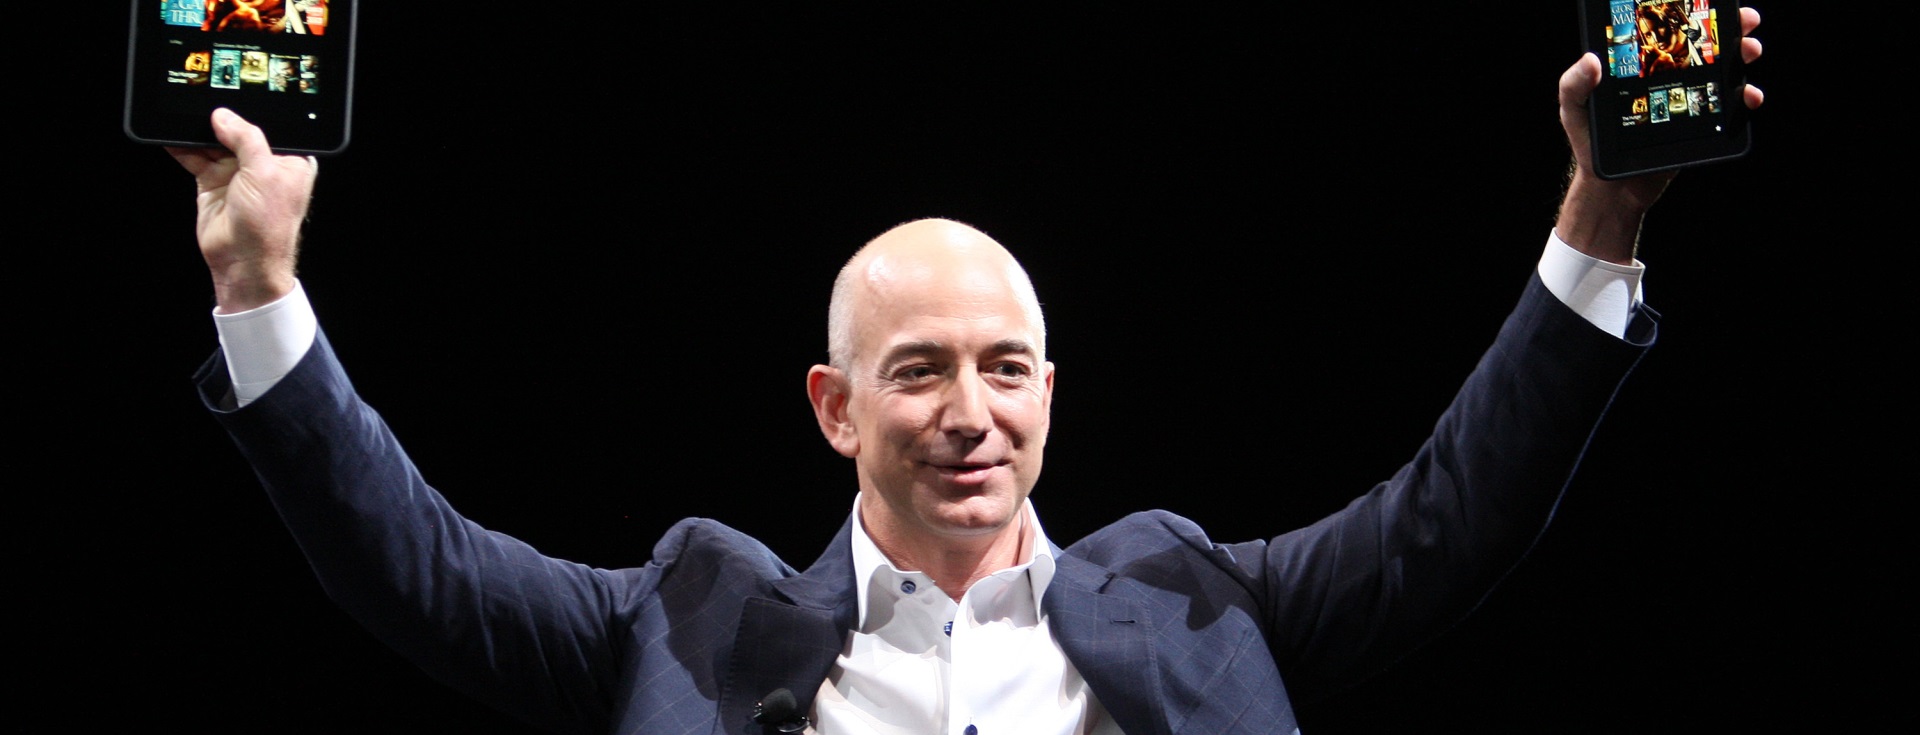 Amazon'un Kurucusu Jeff Bezos'un Favori Kitapları